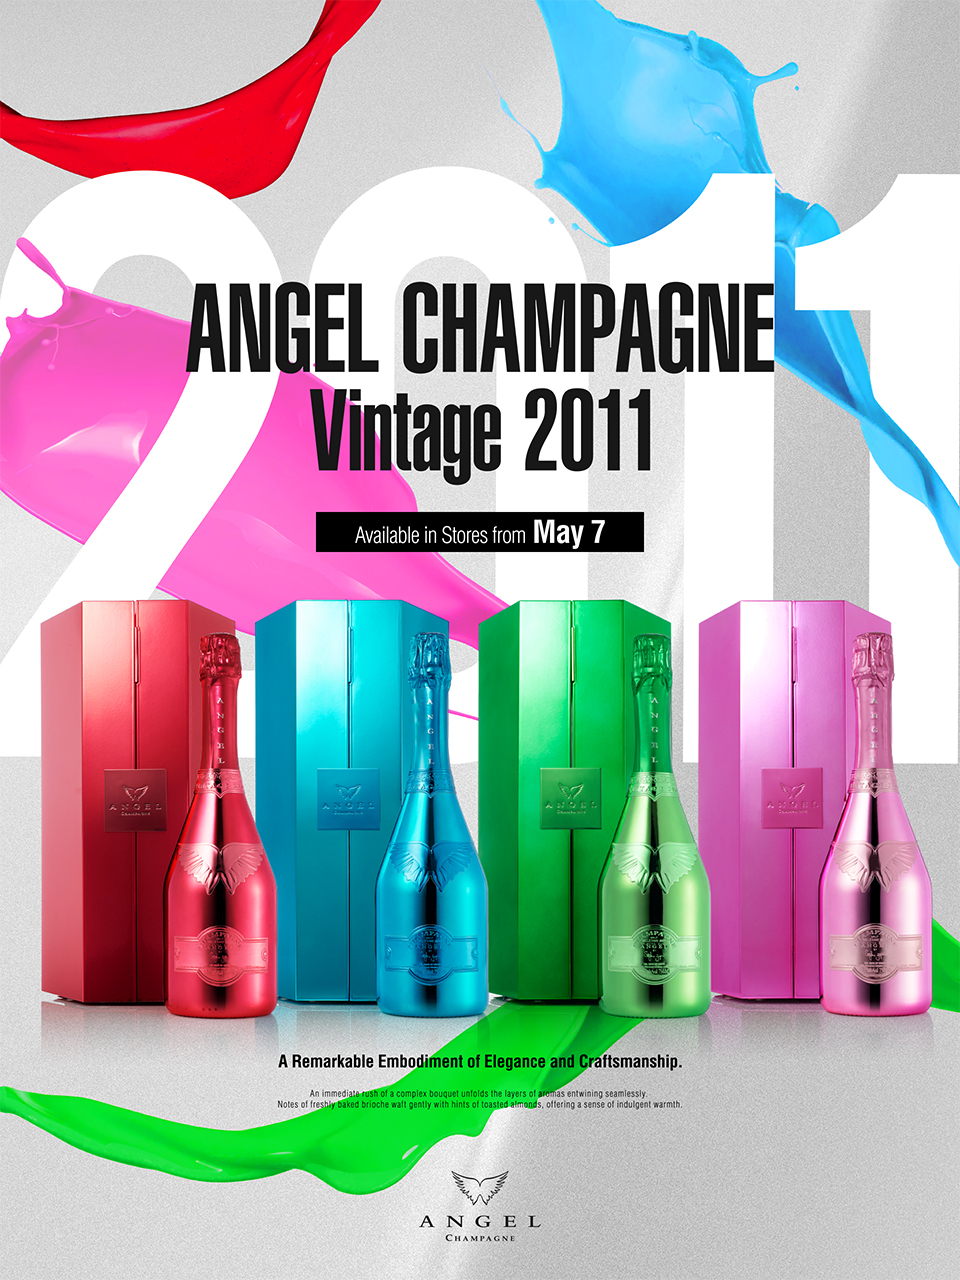 ラグジュアリーシャンパンブランド“ANGEL CHAMPAGNE”が
『ANGEL CHAMPAGNE Vintage2011』の発売を発表！